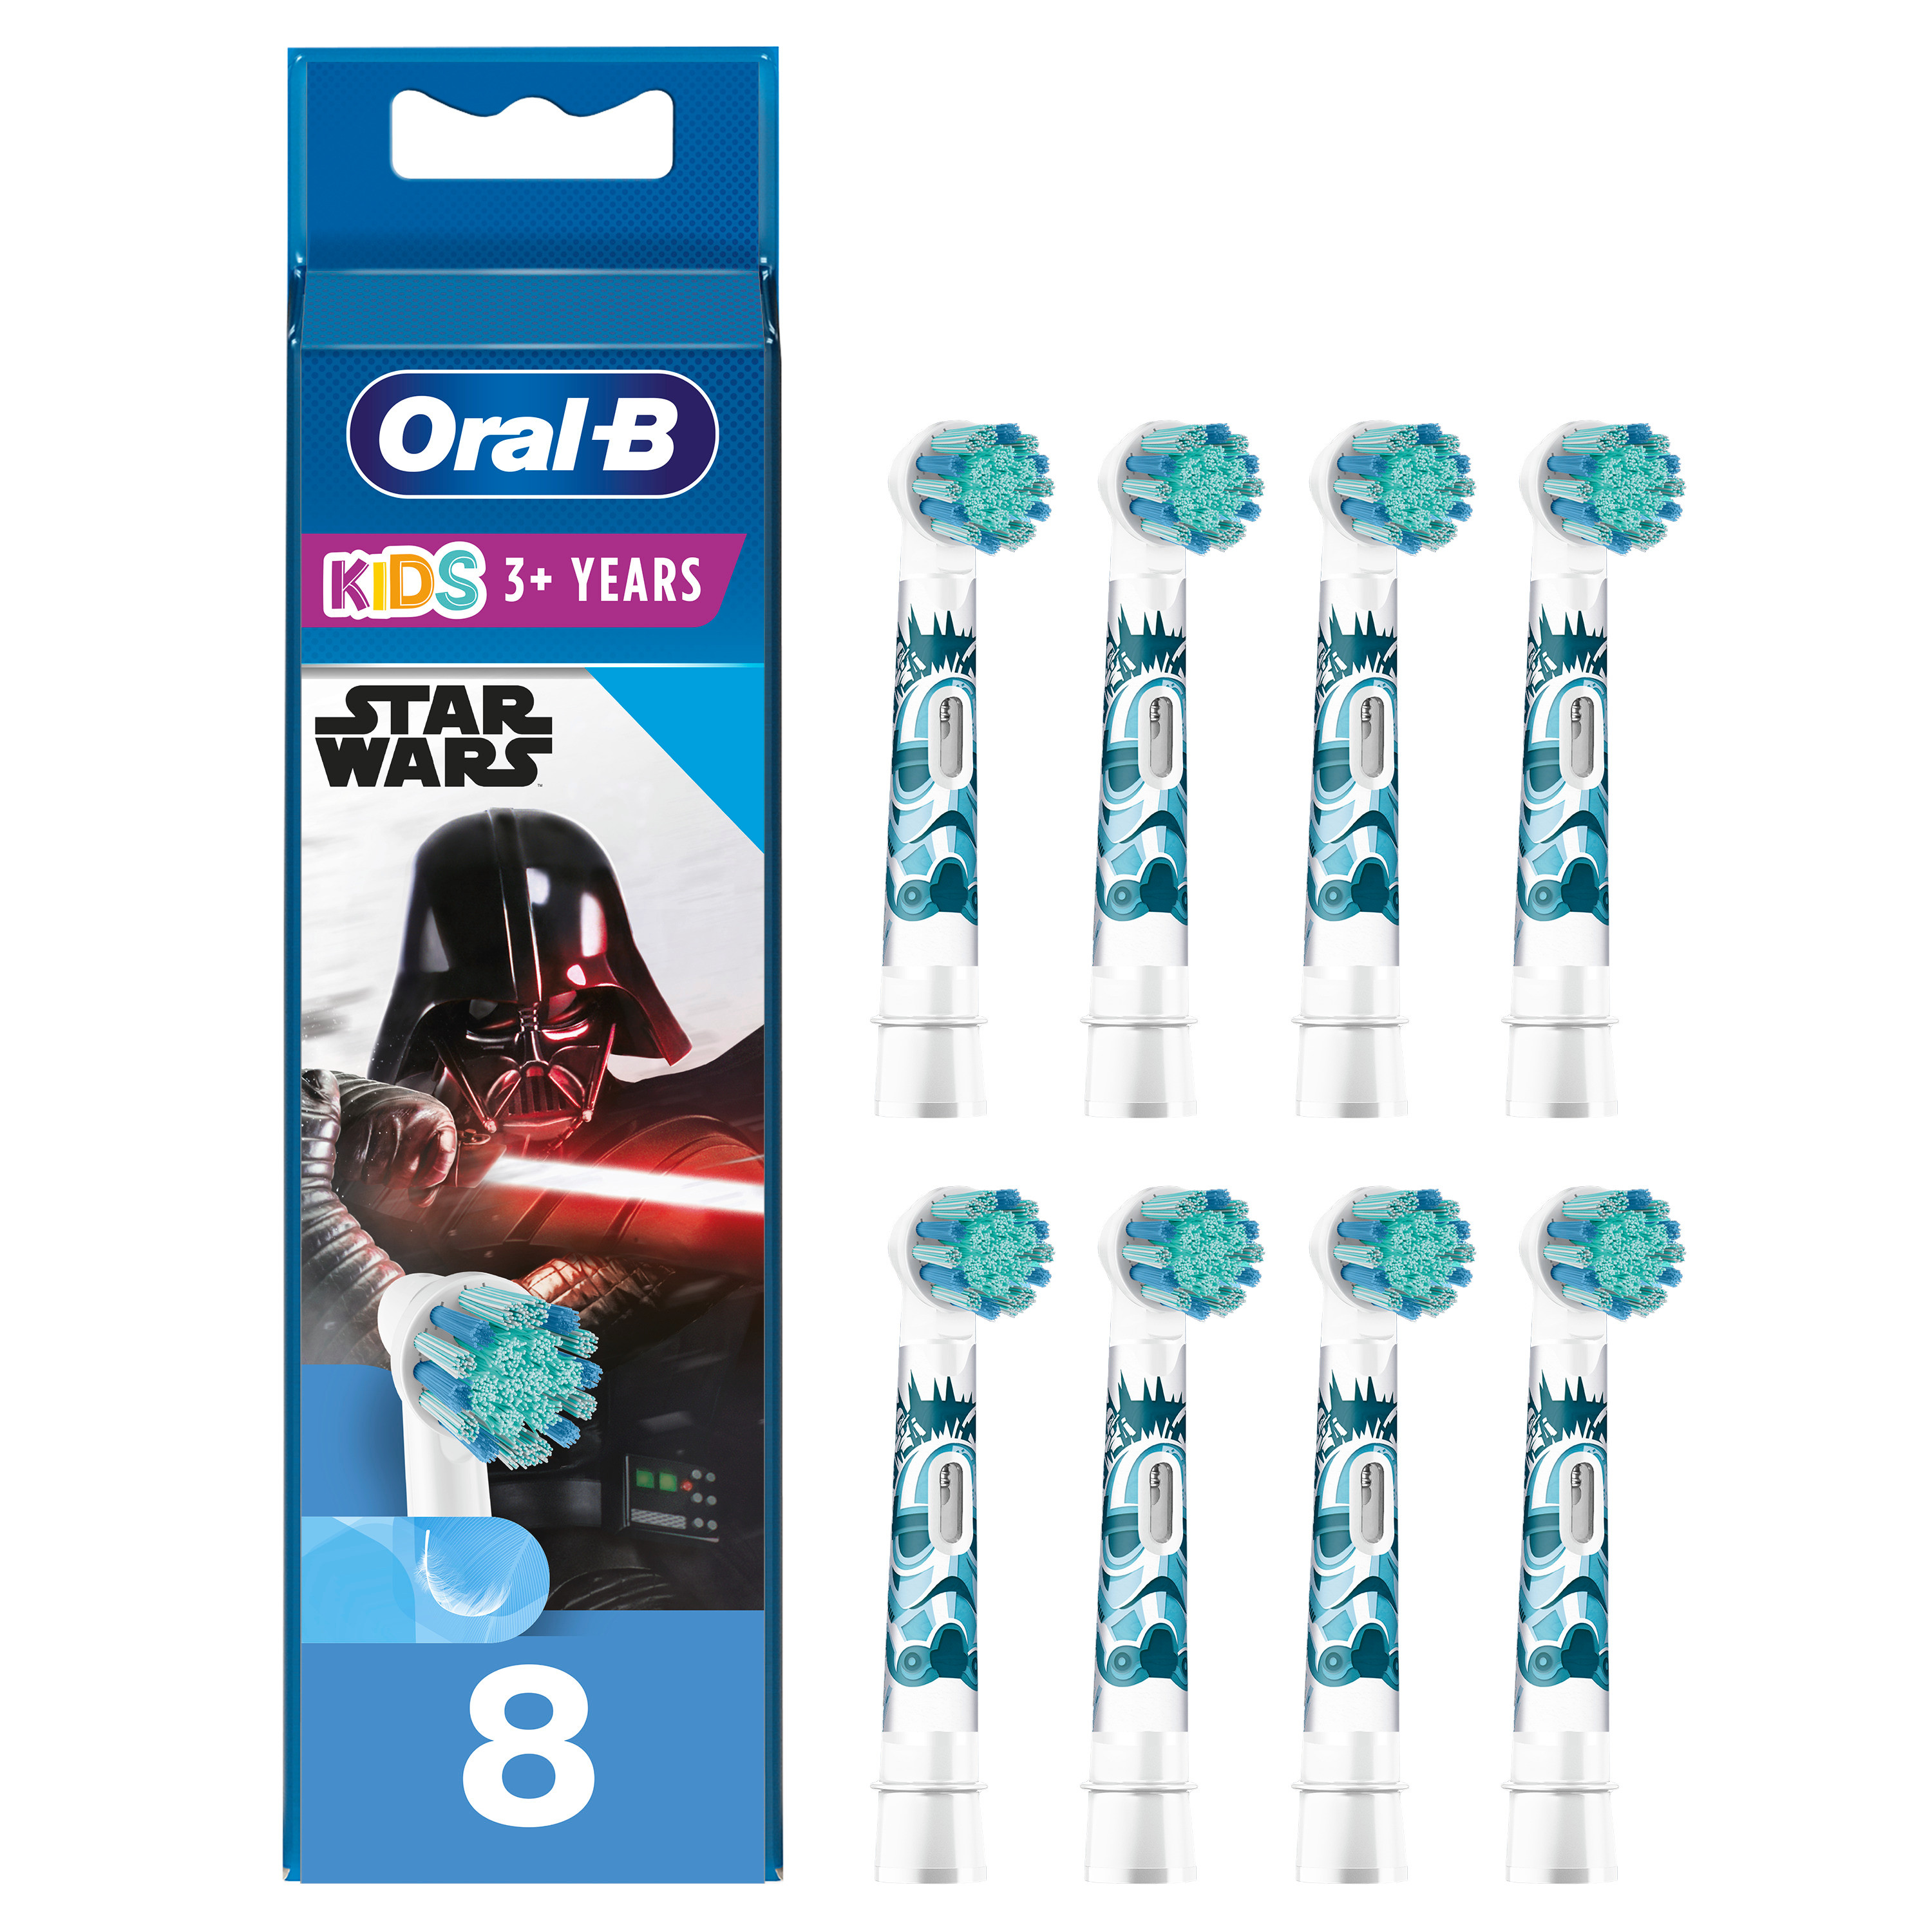 Oral-B Recambios para Niños Star Wars - Pack de 8